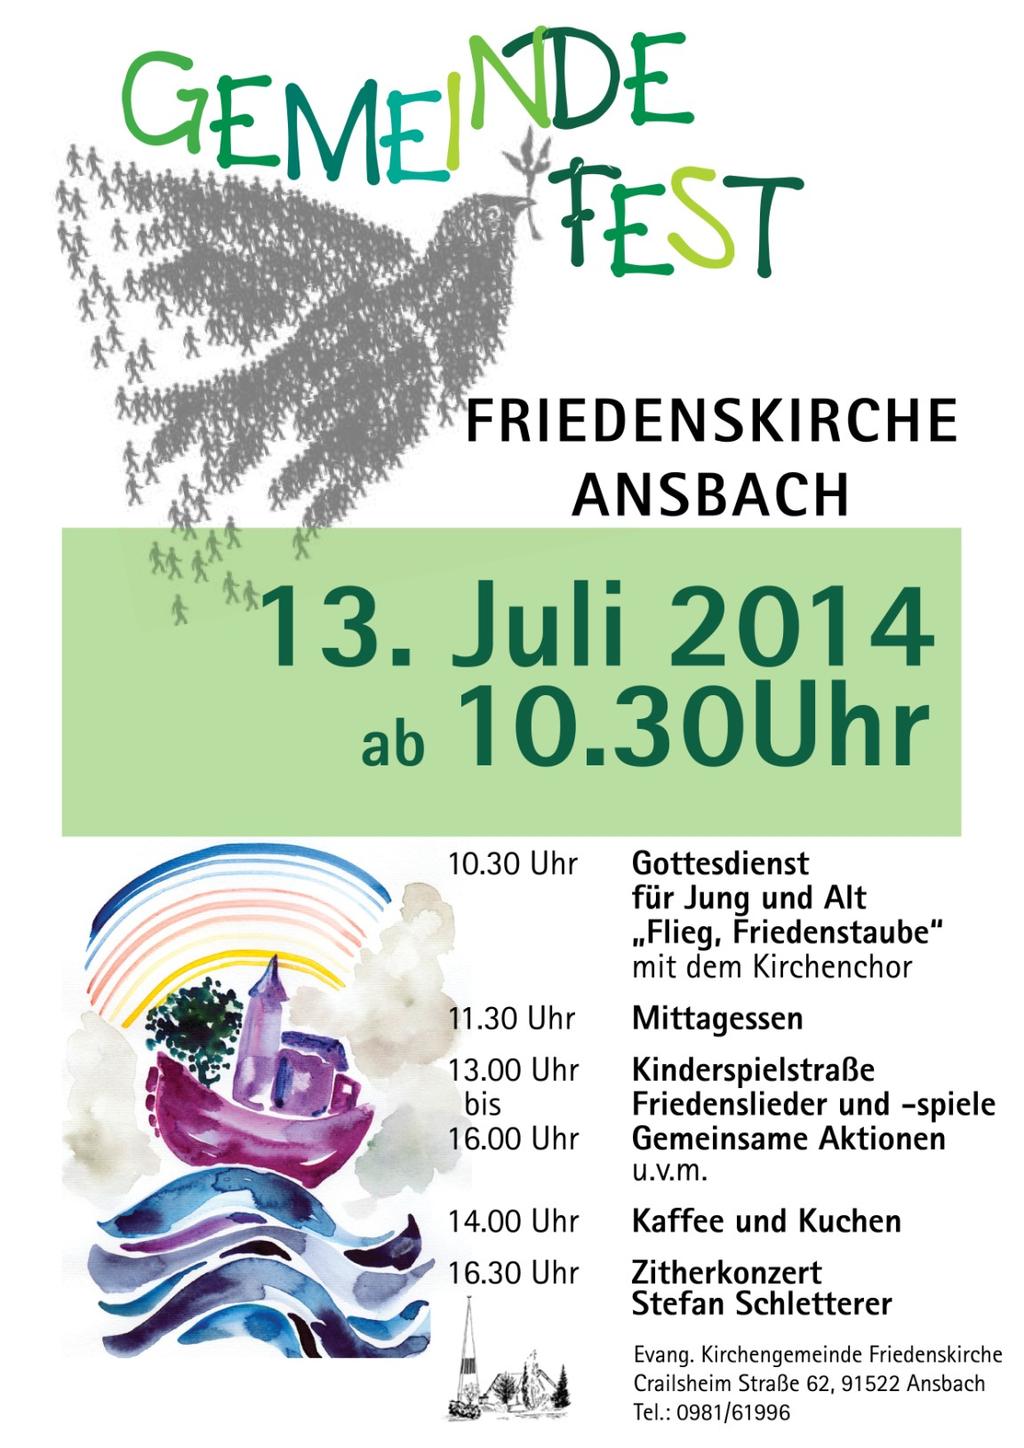 Gemeindefest in Sicht Sonntag 13. Juli um 10.30 Uhr Flieg Friedenstaube Unter diesem Motto findet das Gemeindefest 2014 am Sonntag, 13. Juli ab 10.30 Uhr statt.